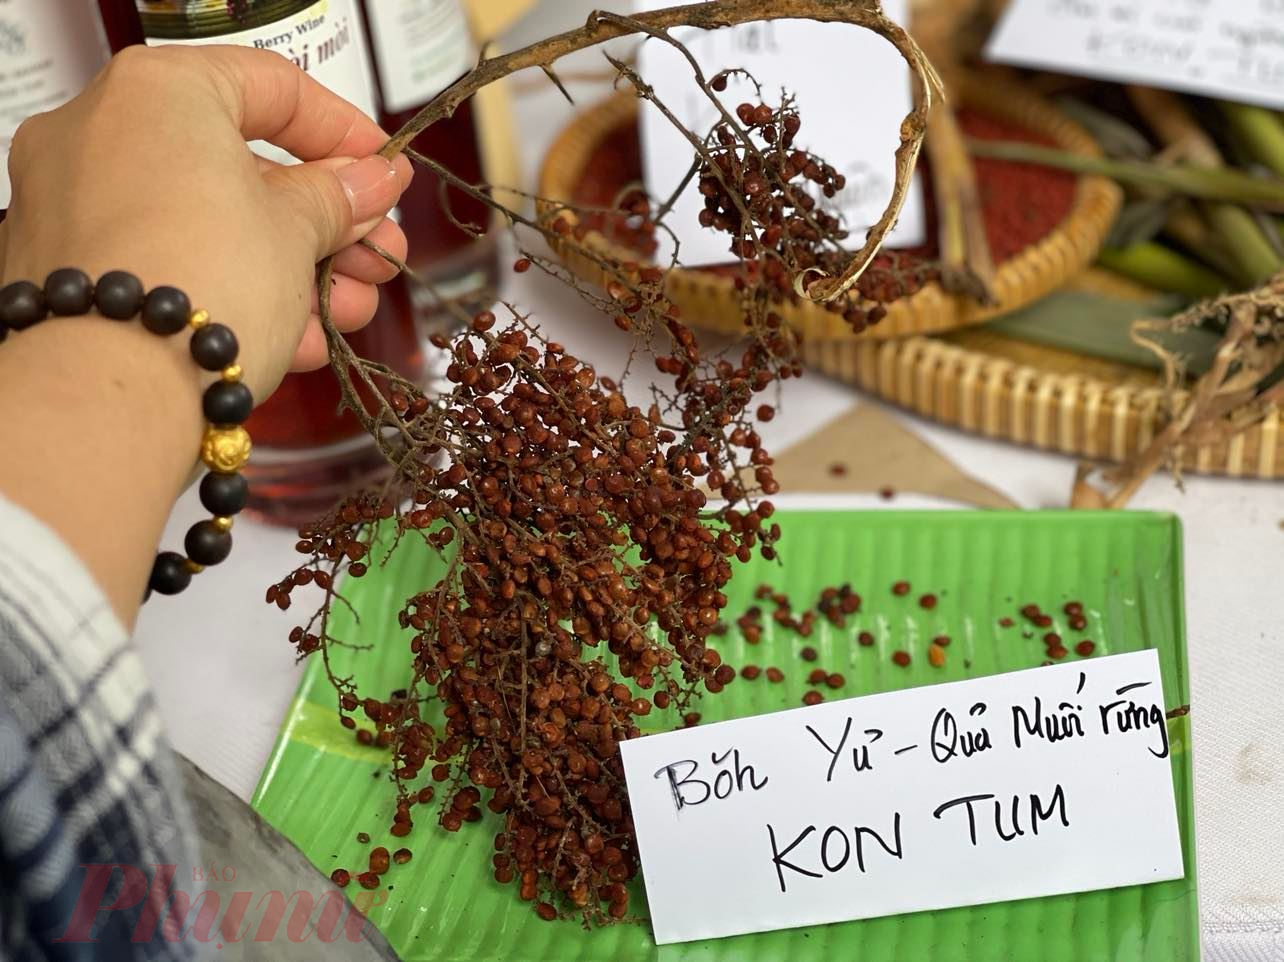 Quả muối rừng mọc nhiều ở Kon Tum, lúc quả còn non được phủ một lớp màu trắng như muối, trái già chuyển màu nâu; dùng để ướp thịt, có vị chua, mặn...